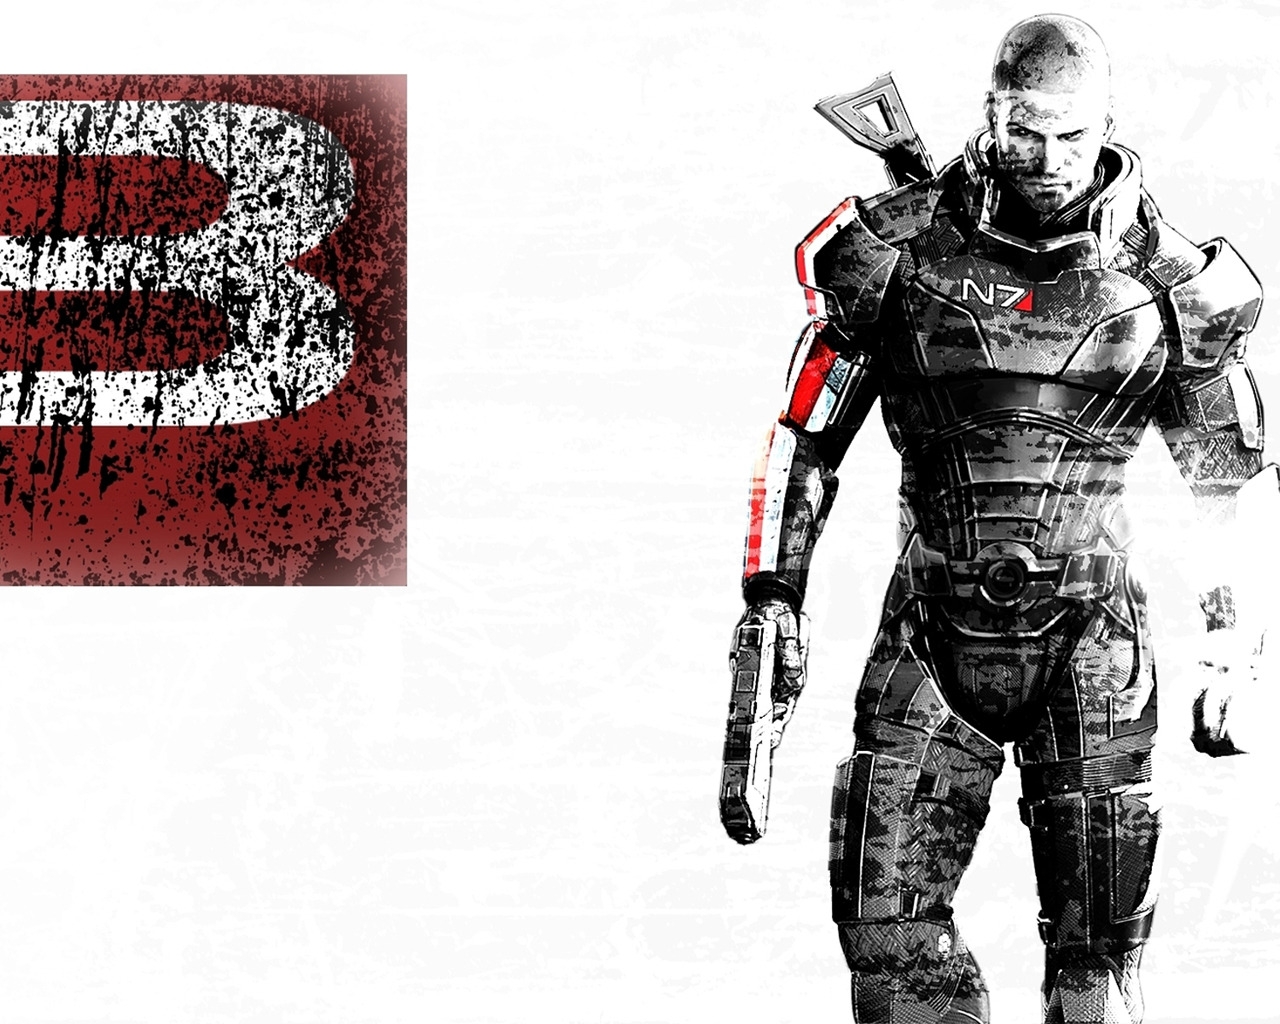 Mass Effect 3 Art for 1280 x 1024 resolution